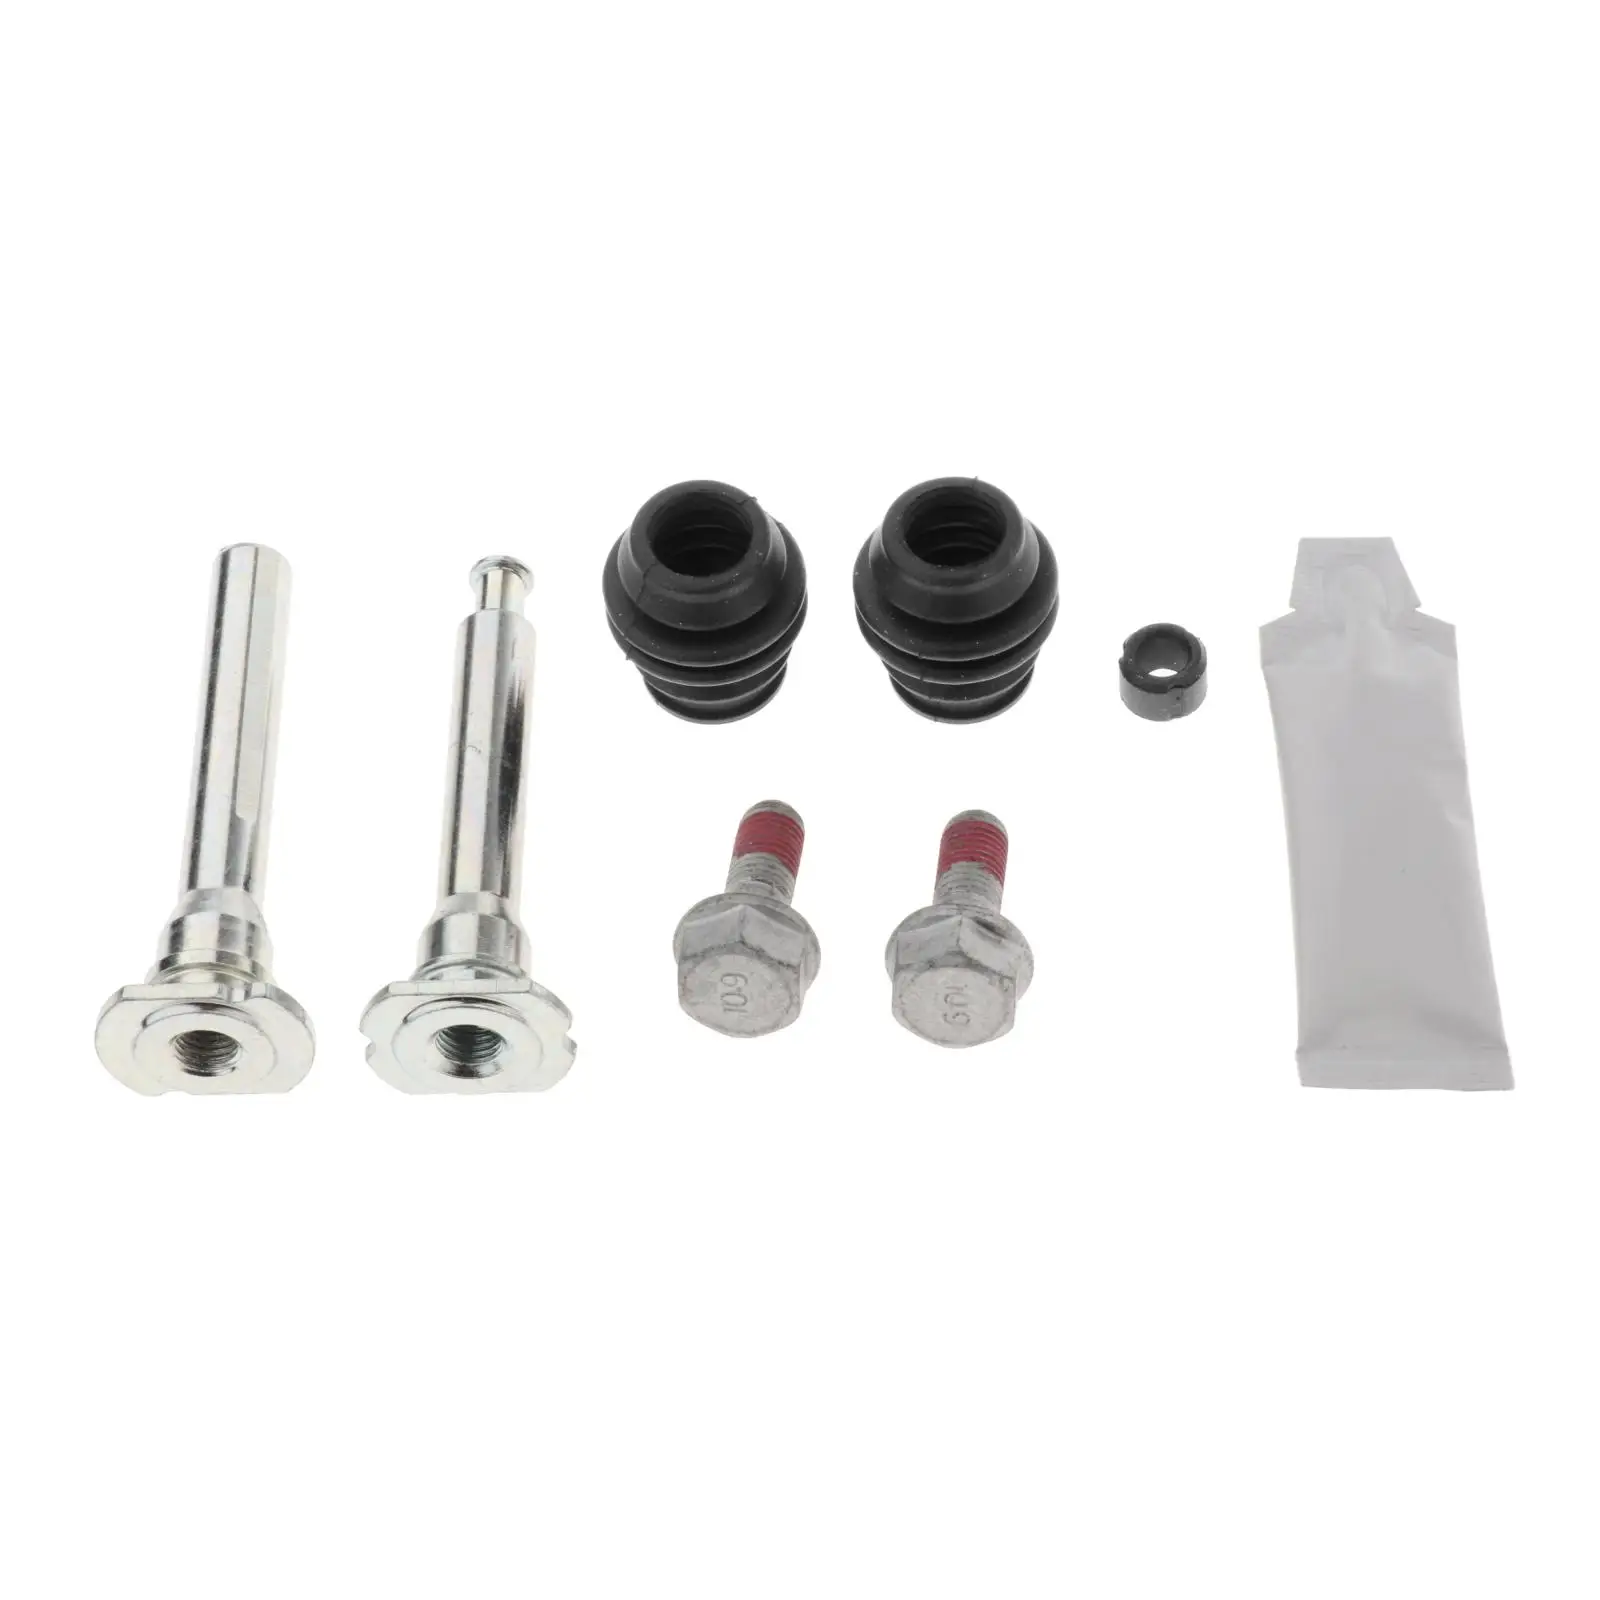 Slider Bolt Guide Pin Car Truck Parts for Honda MK2 02-06 Front Brake Housing Pin Repair Caliper Kit Guide